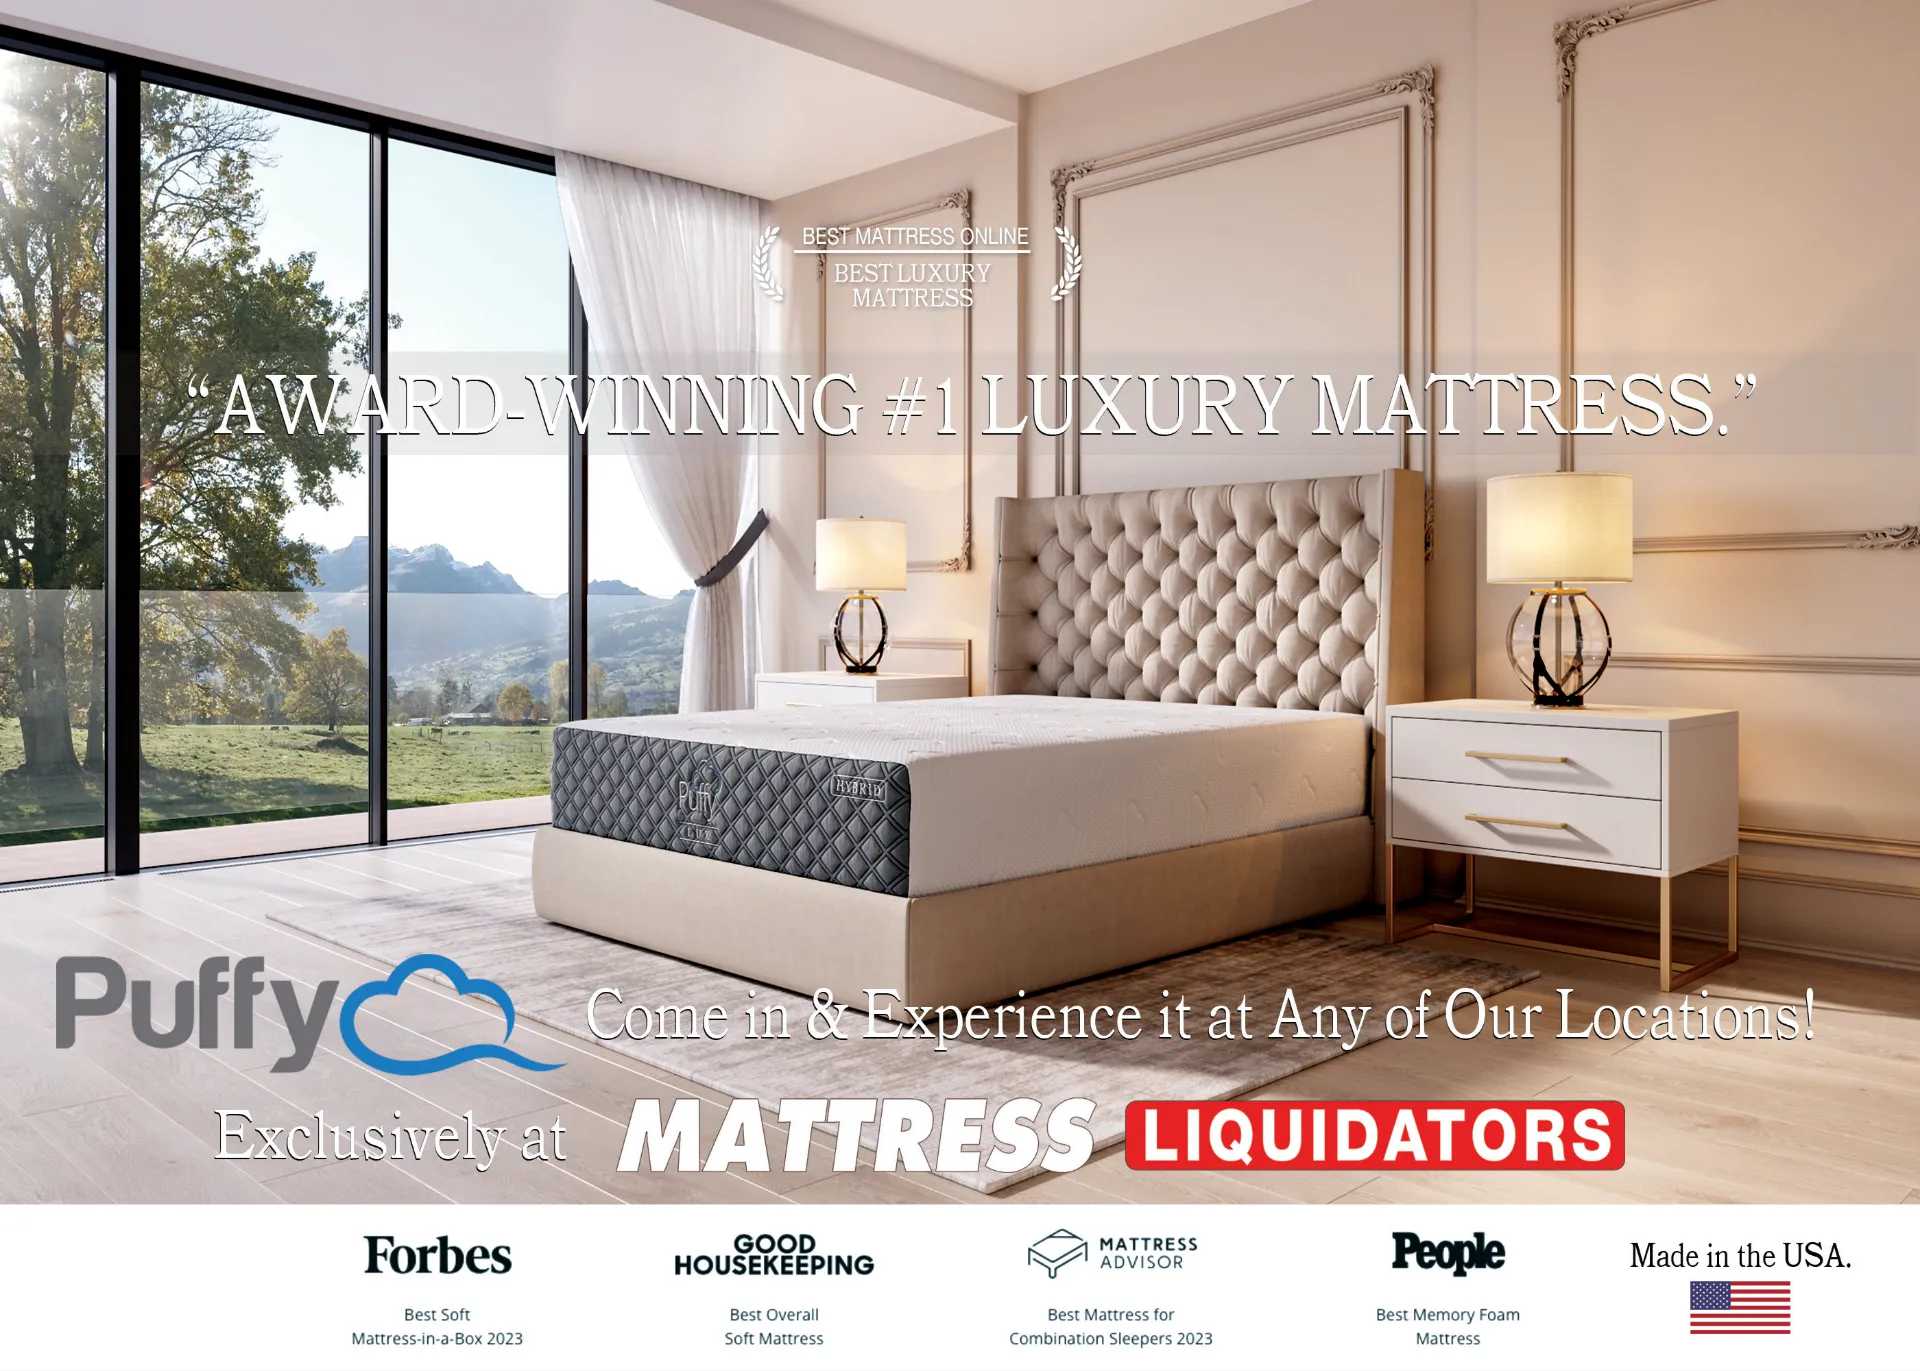 (c) Mattress-liquidators.com